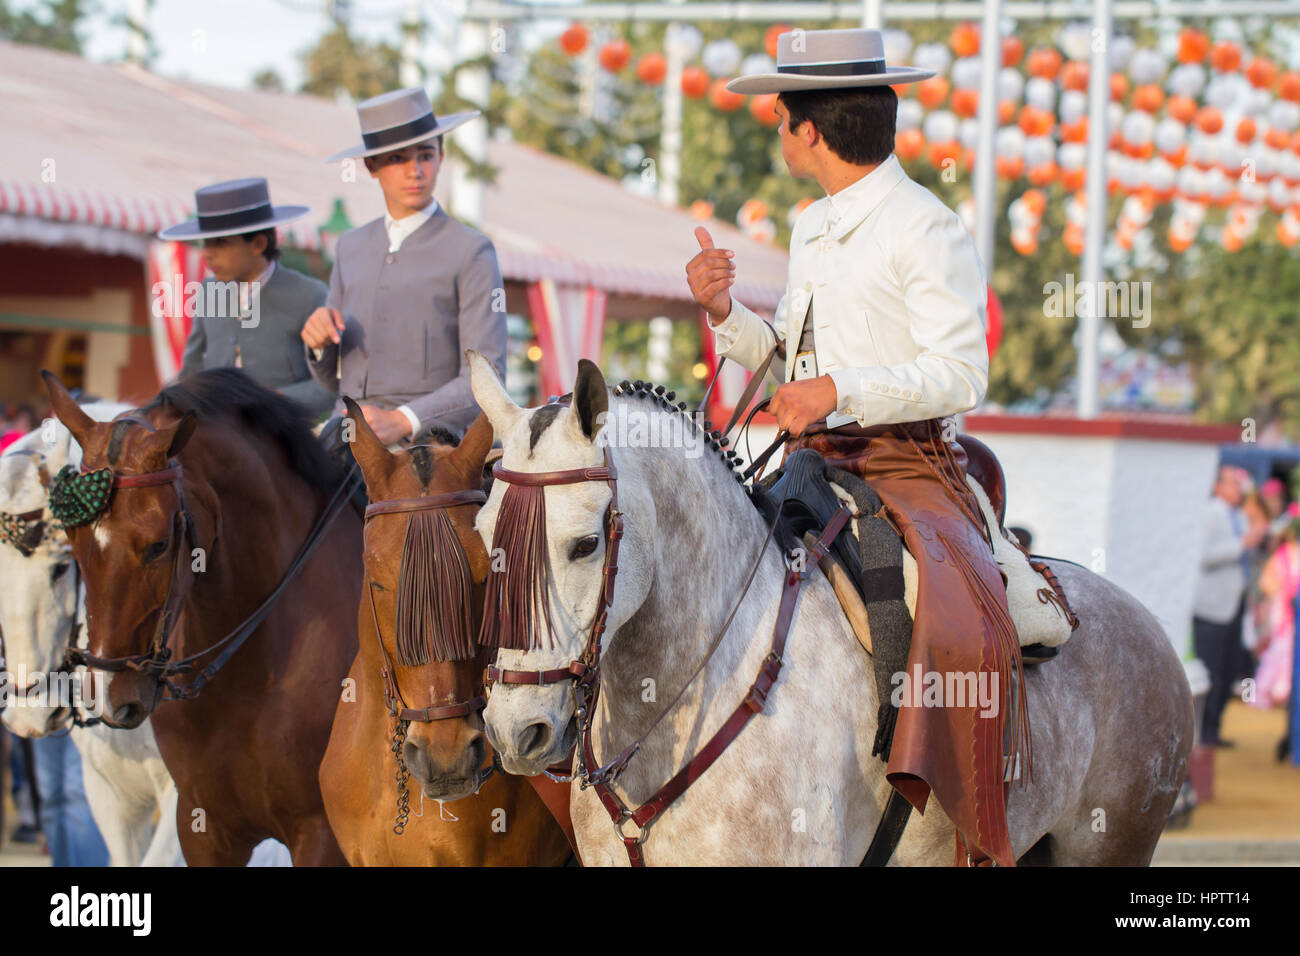 Siviglia, Spagna - Apr, 25: uomini vestiti in costumi tradizionali a cavallo su feria de abril su Aprile 25, 2014 a Siviglia, Spagna Foto Stock